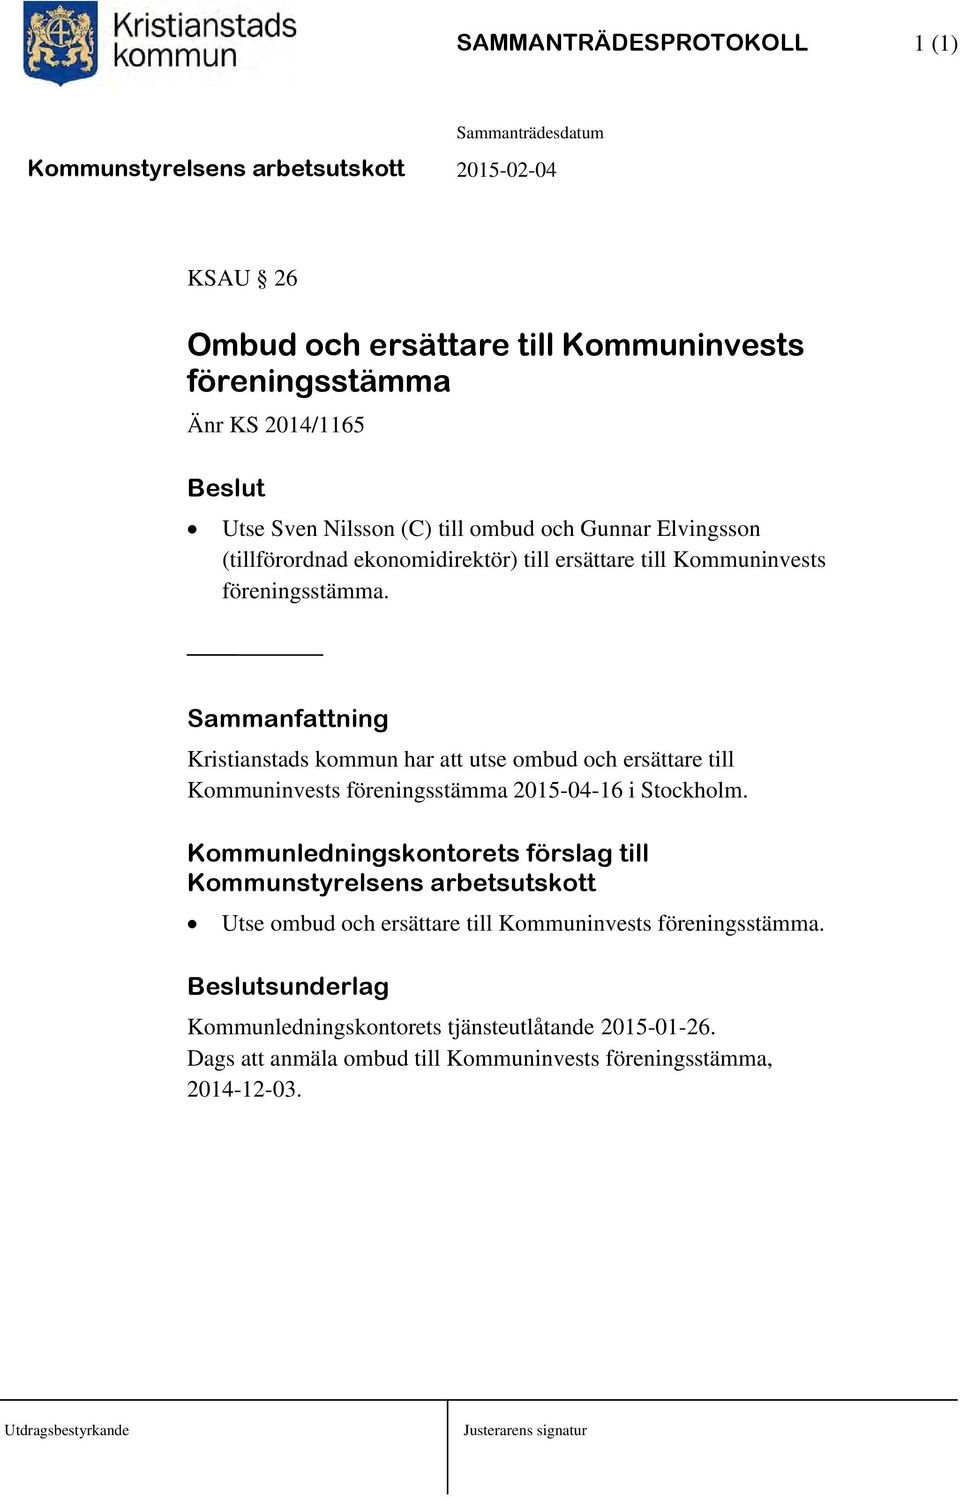 Sammanfattning Kristianstads kommun har att utse ombud och ersättare till Kommuninvests föreningsstämma 2015-04-16 i Stockholm.